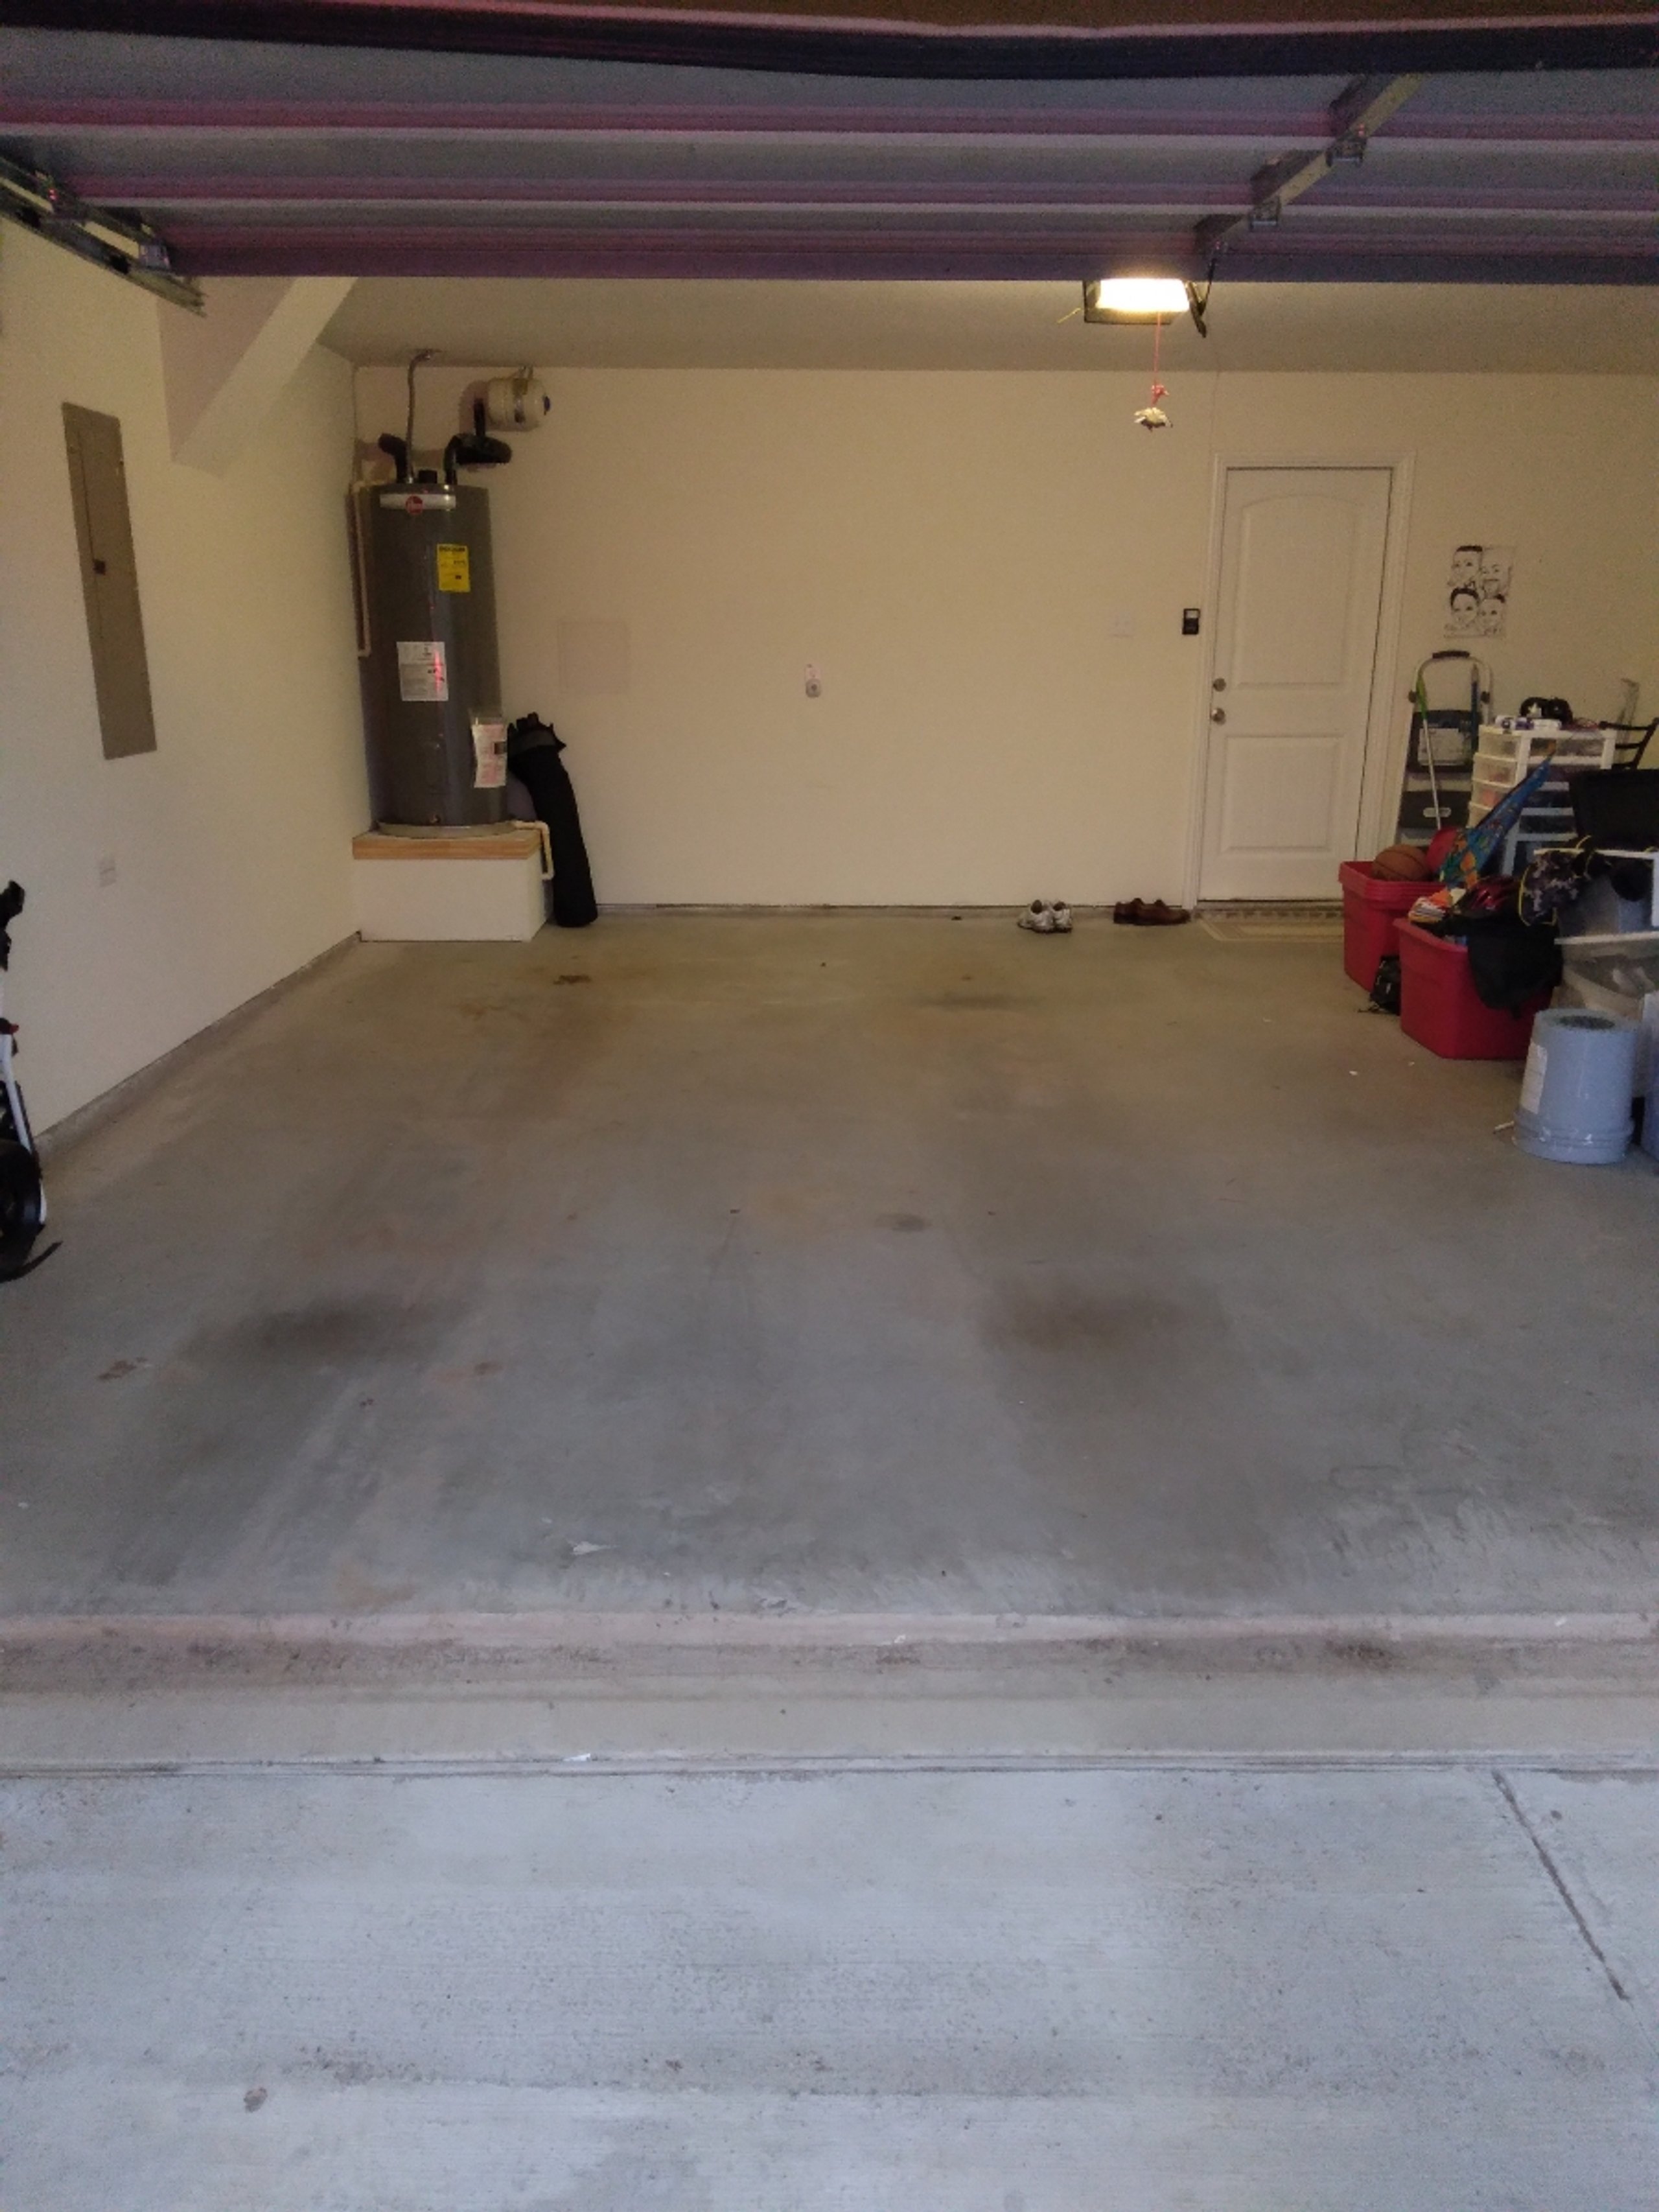 20x10 Garage self storage unit in Dallas, TX